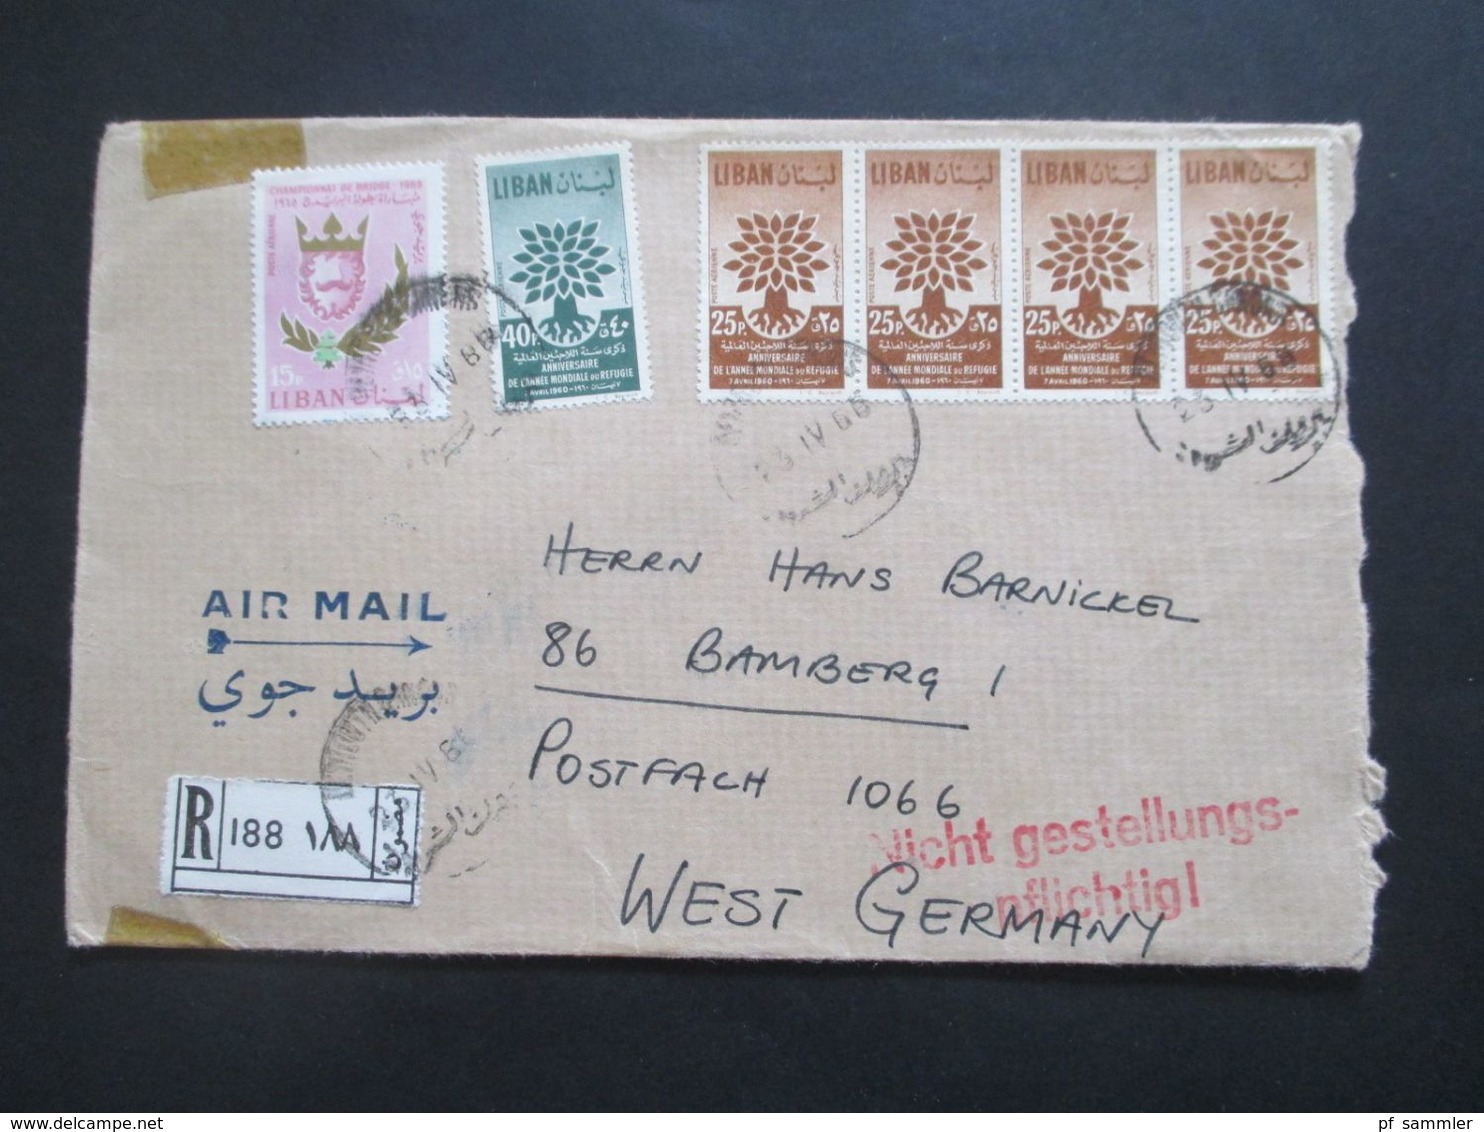 Libanon 1966 Einschreiben Air Mail / Luftpost Roter Stempel L2 Nicht Gestellungspflichtig! Liban - Libano